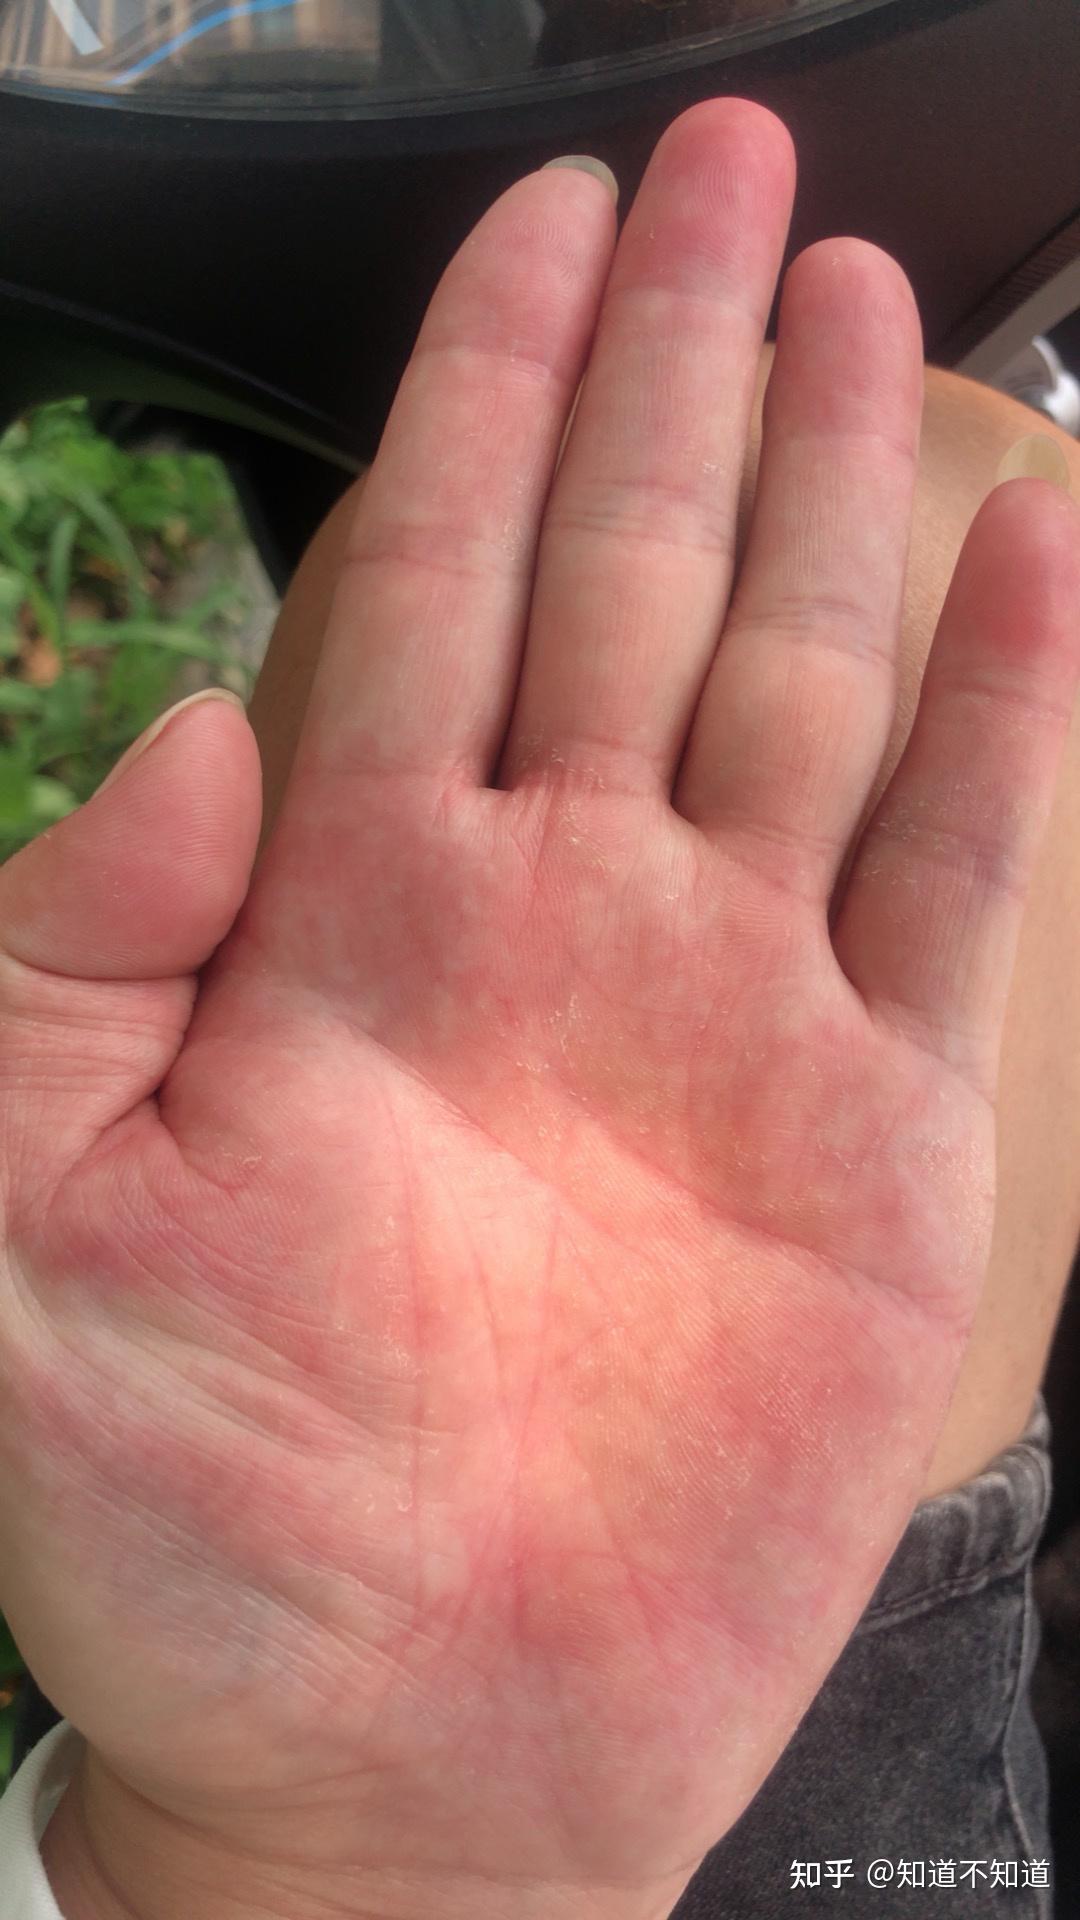 SKIN DISEASE TYPES: Vesicular Hand Dermatitis (Skin Disease type)